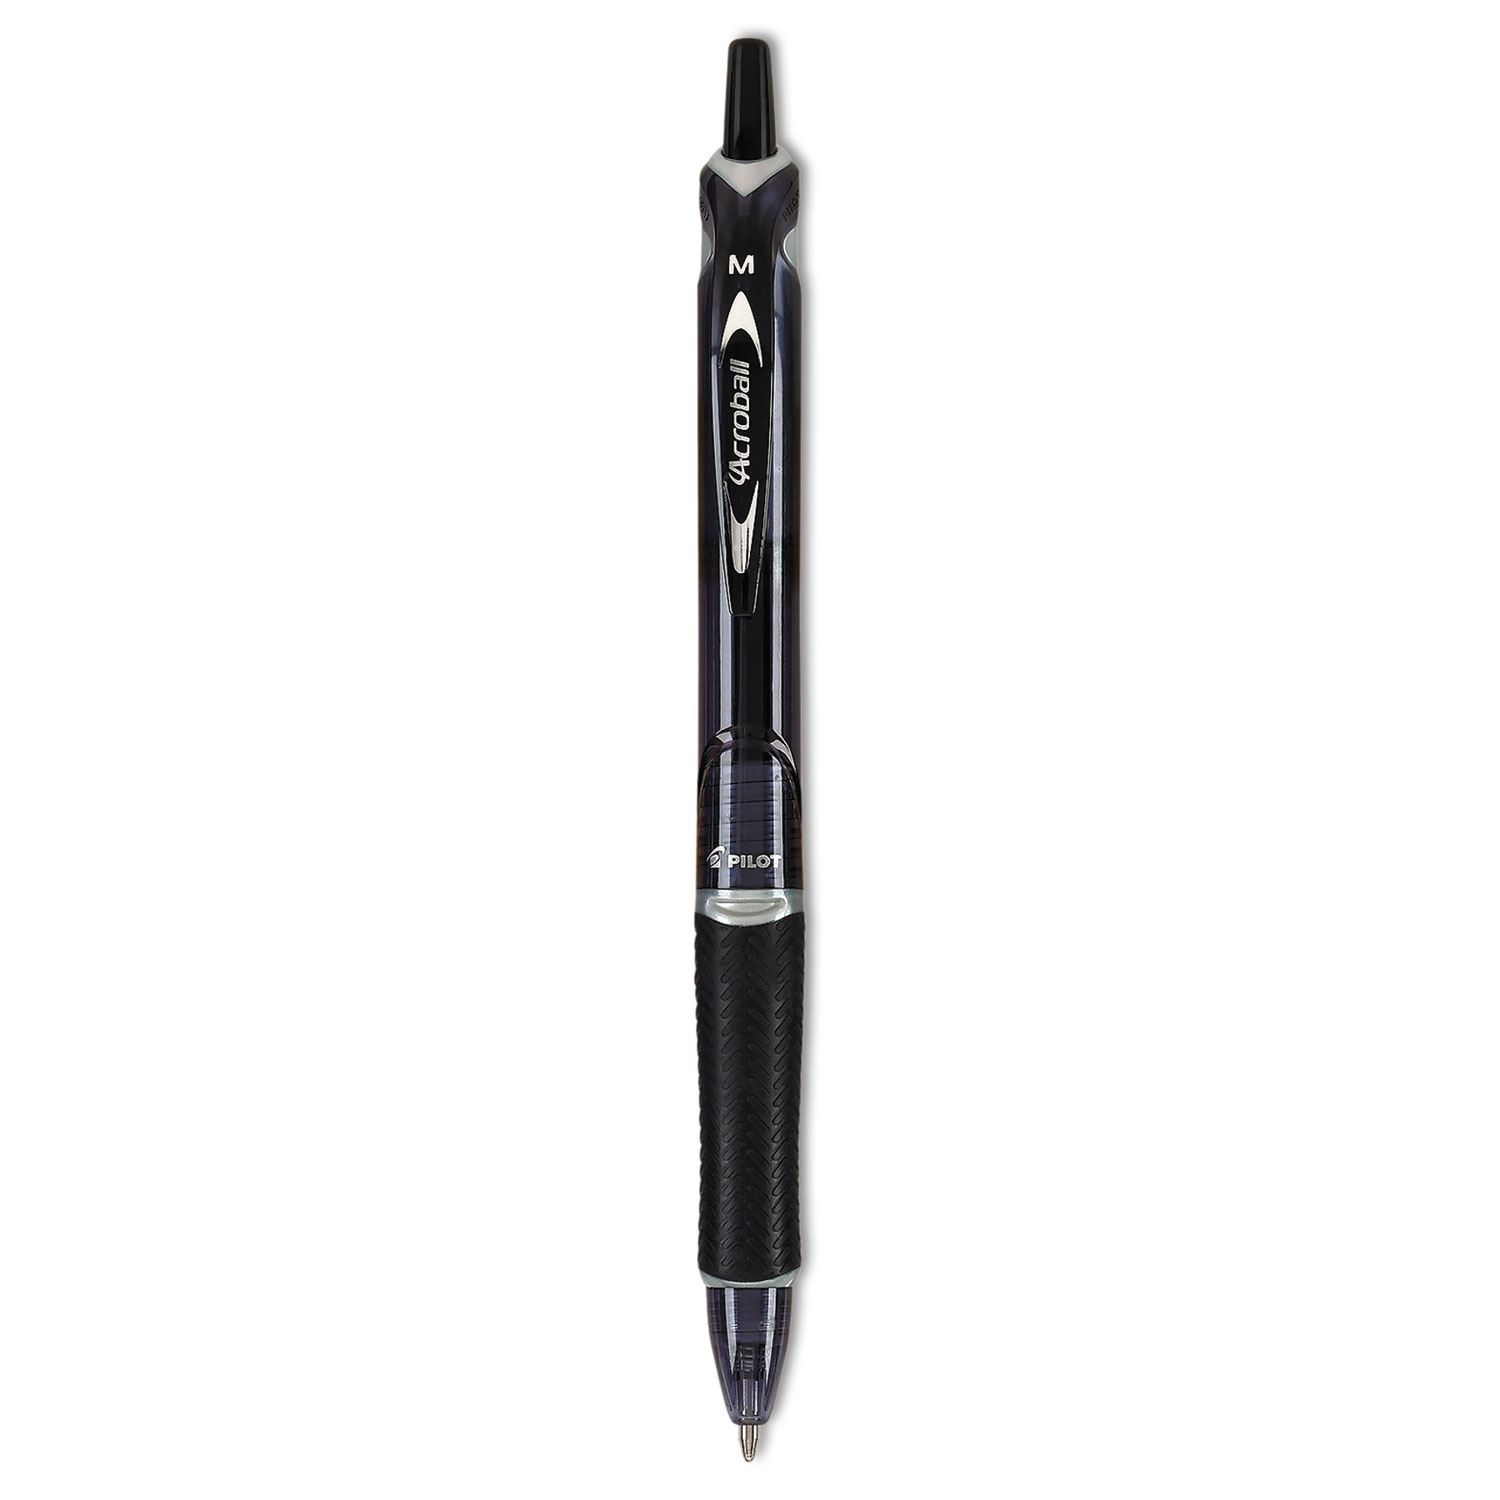  Pilot 31821 Acroball Colors Advanced Ink Retractable Ballpoint Pen, 1mm, Black Ink/Barrel (PIL31821) 